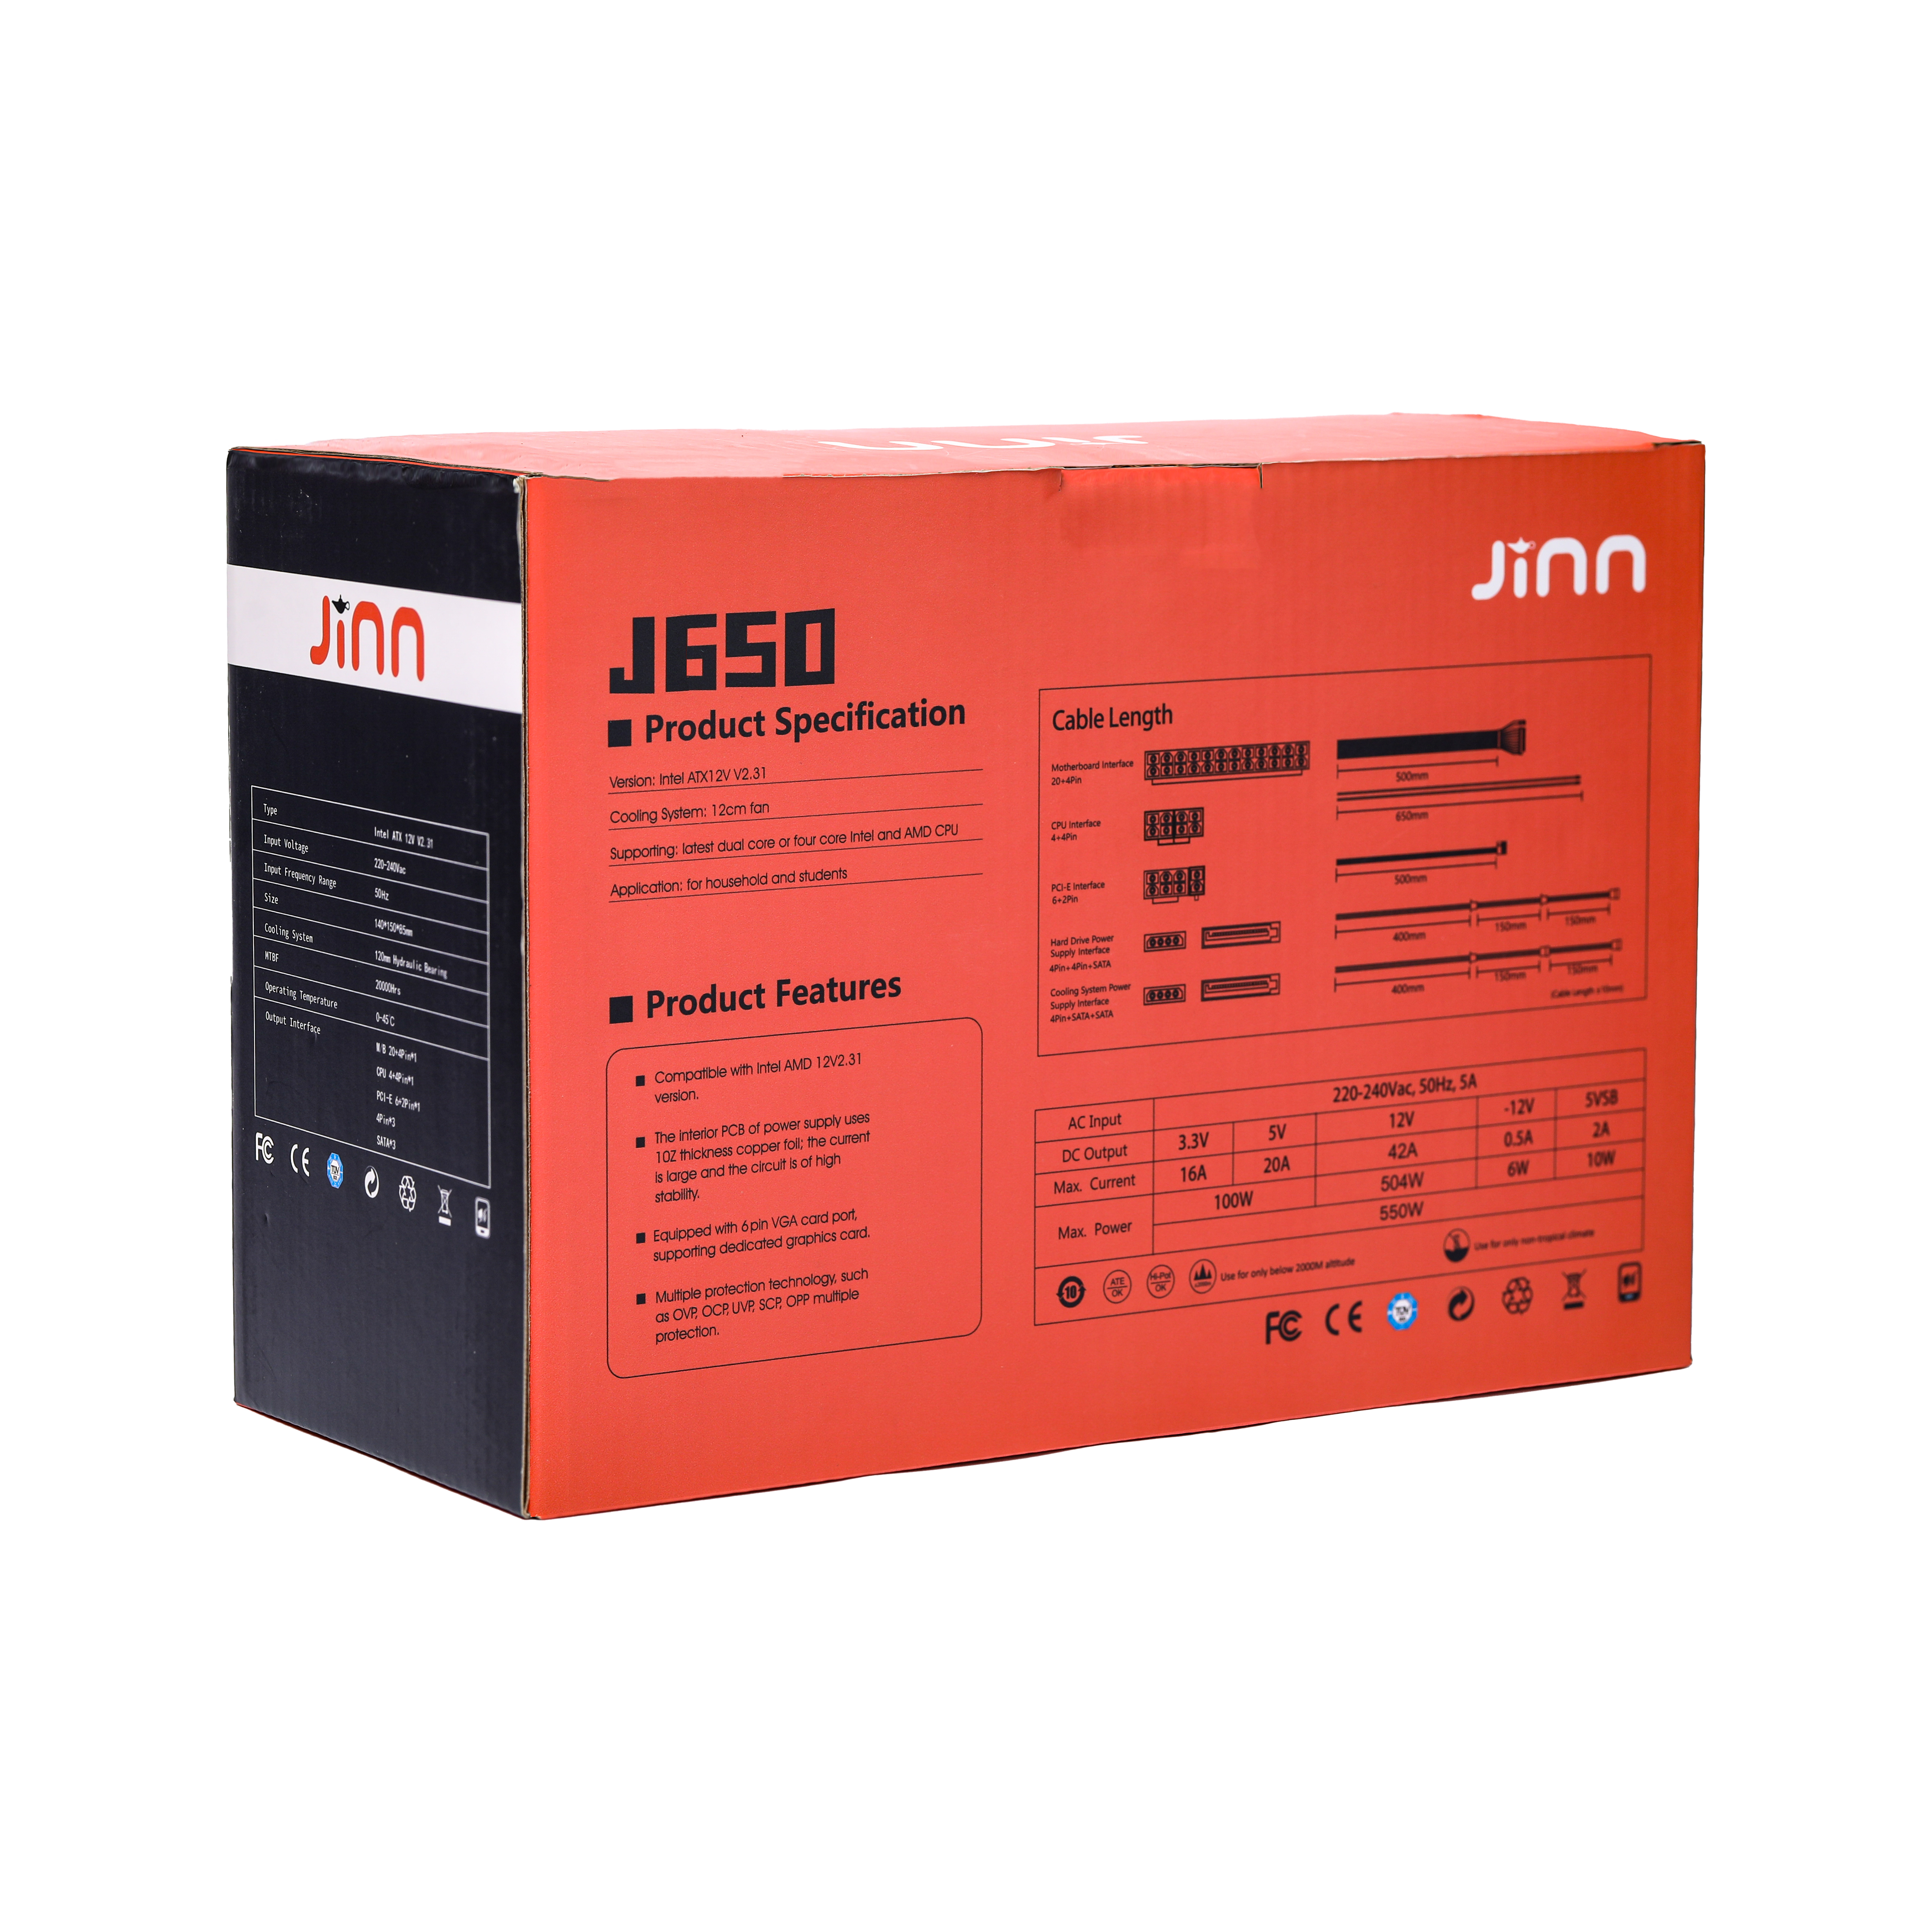 Nguồn Jinn J650 650W ATX